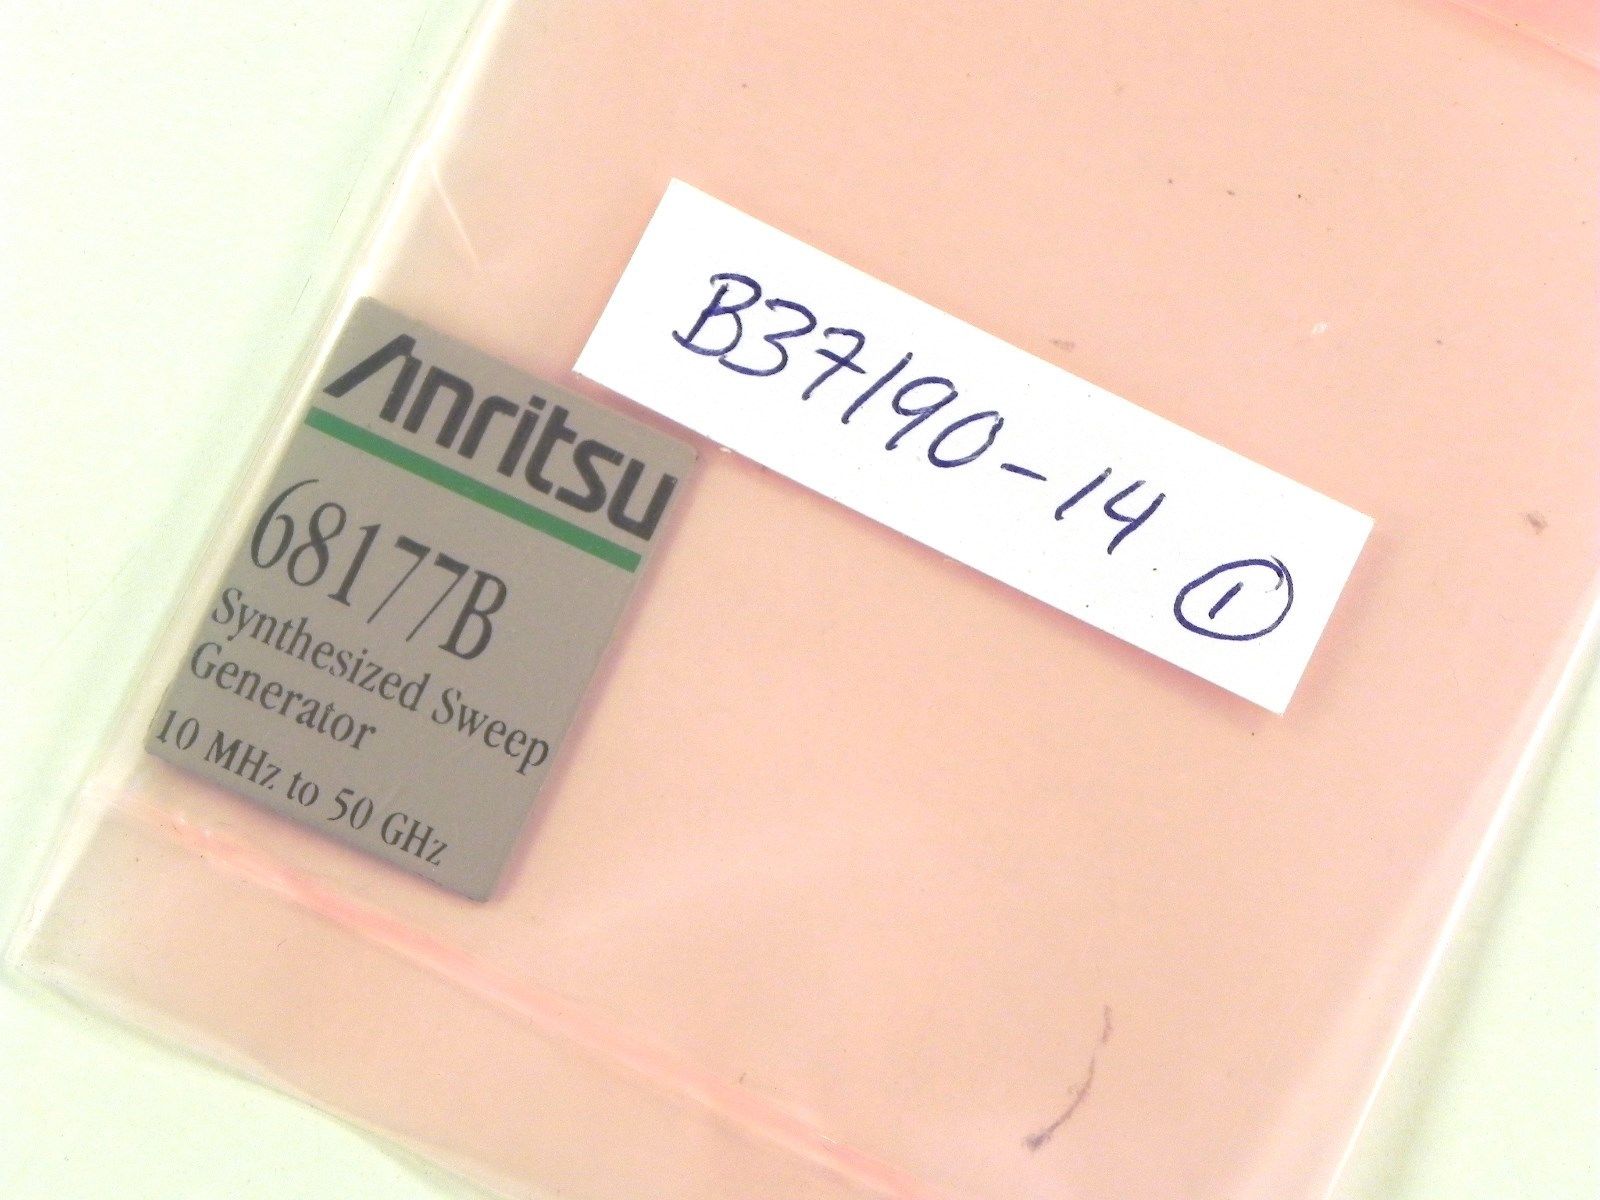 Anritsu B37190-14  68177B Model Label